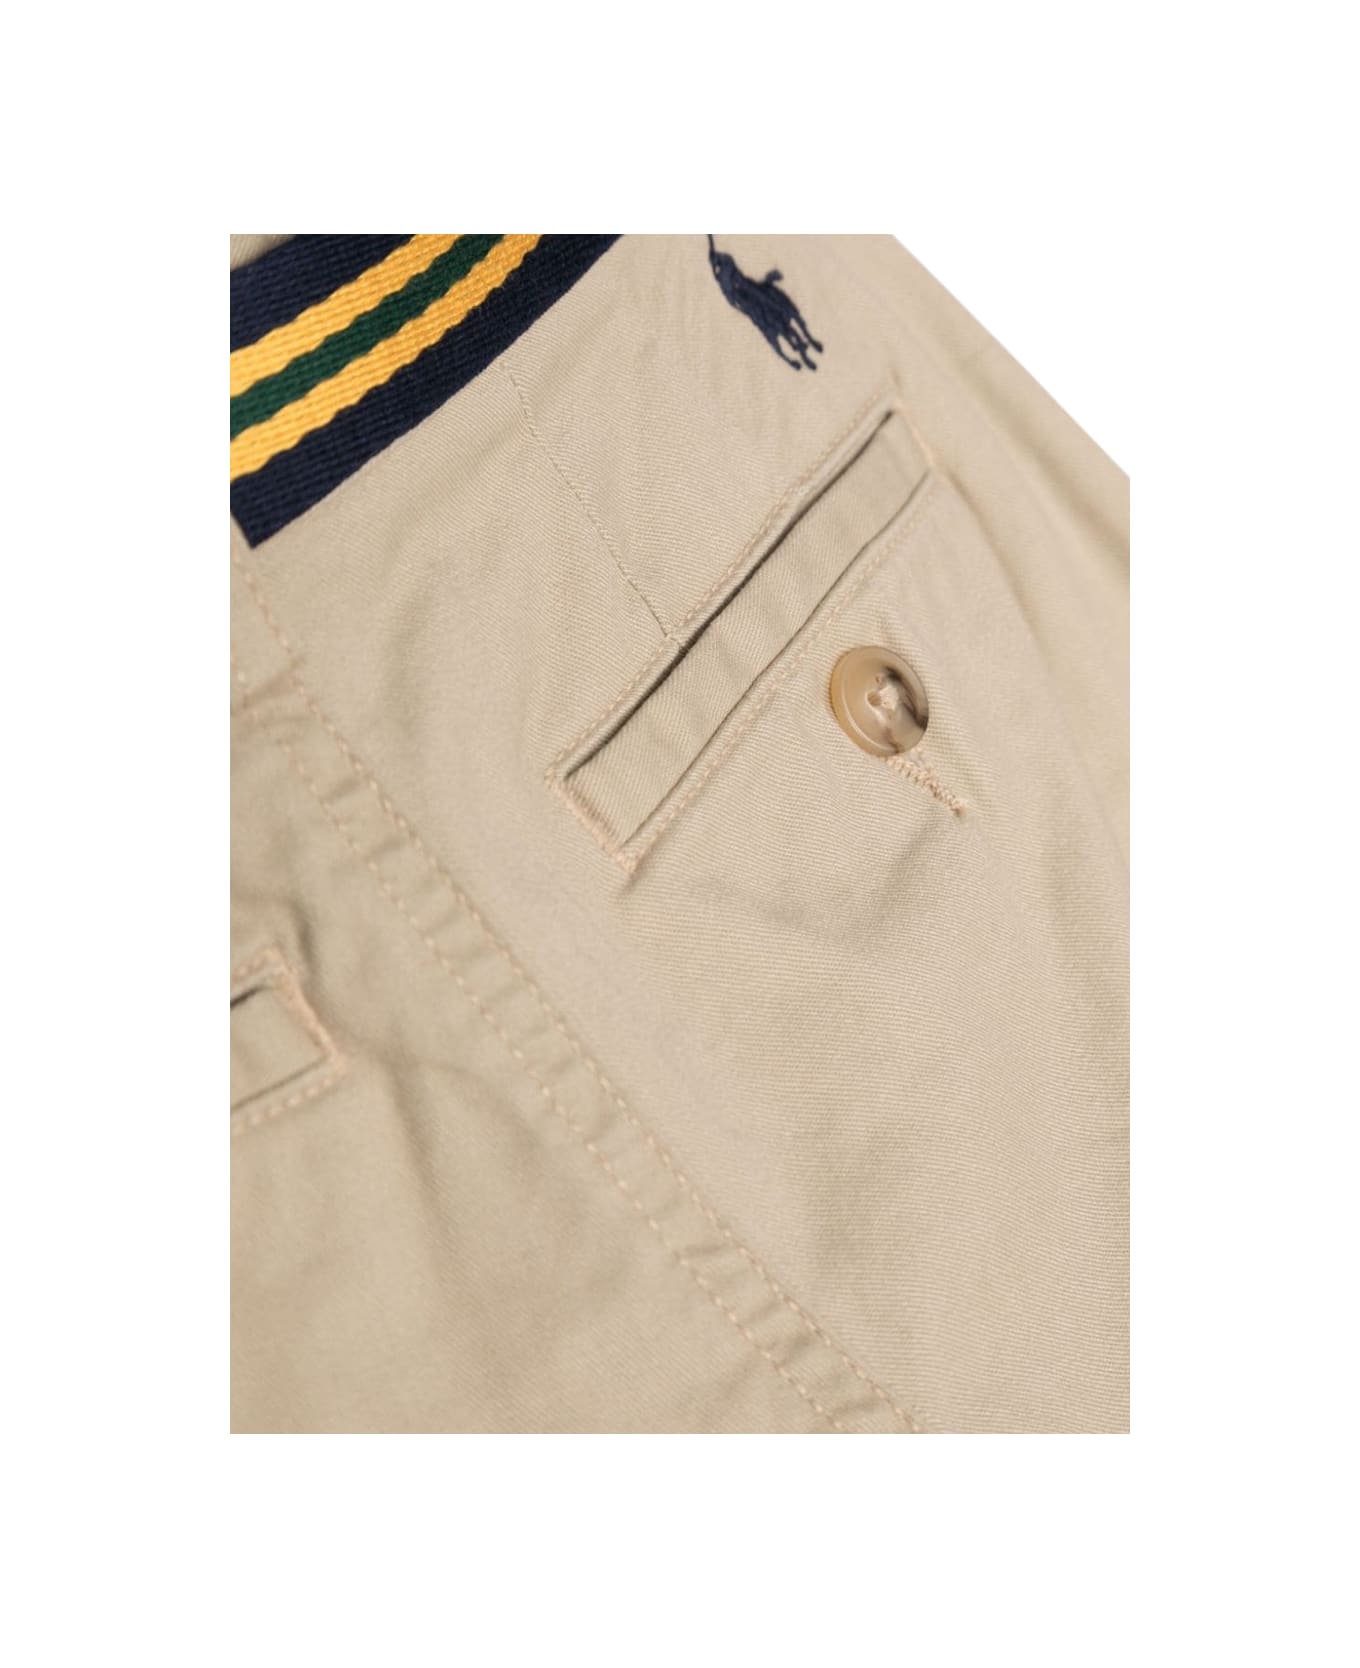 Polo Ralph Lauren Shrt-shorts-flatfront - BROWN